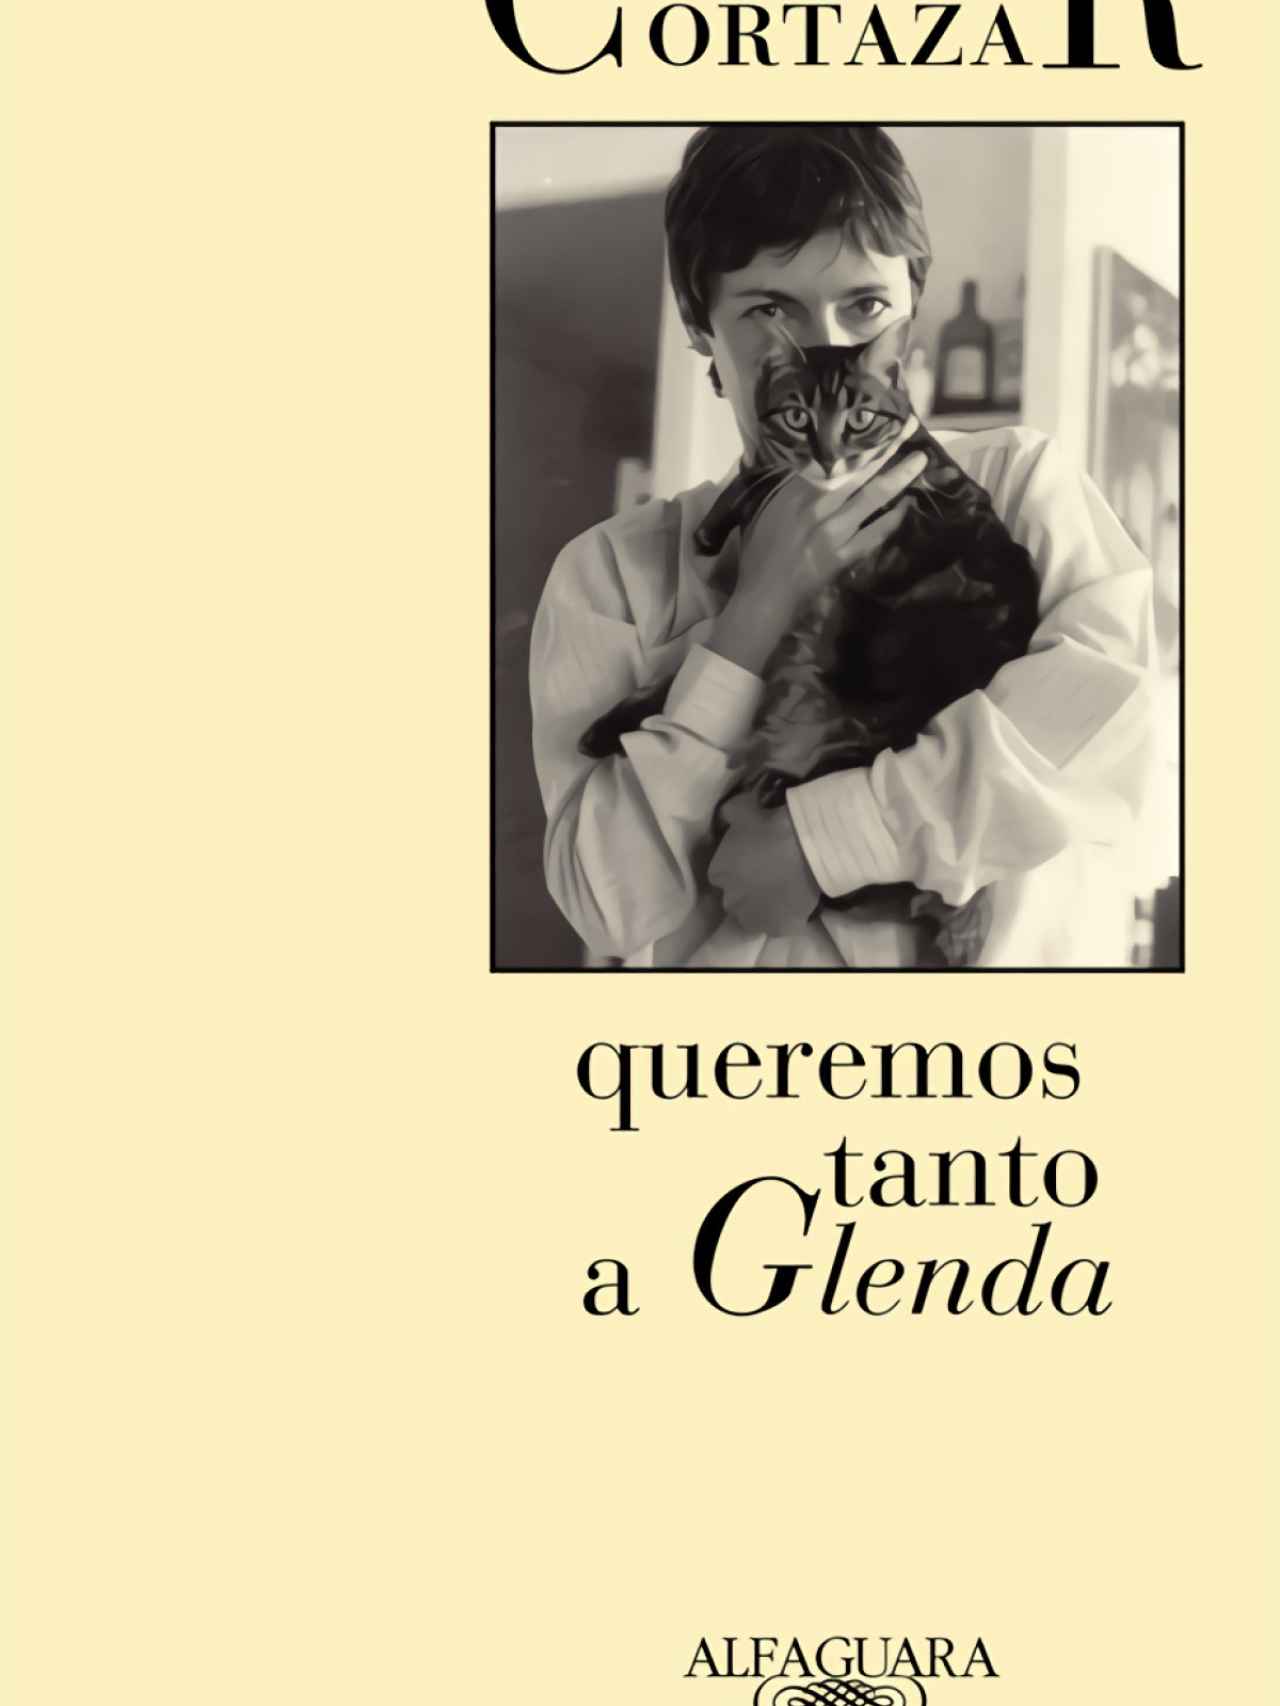 'Queremos tanto a Glenda', de Julio Cortázar